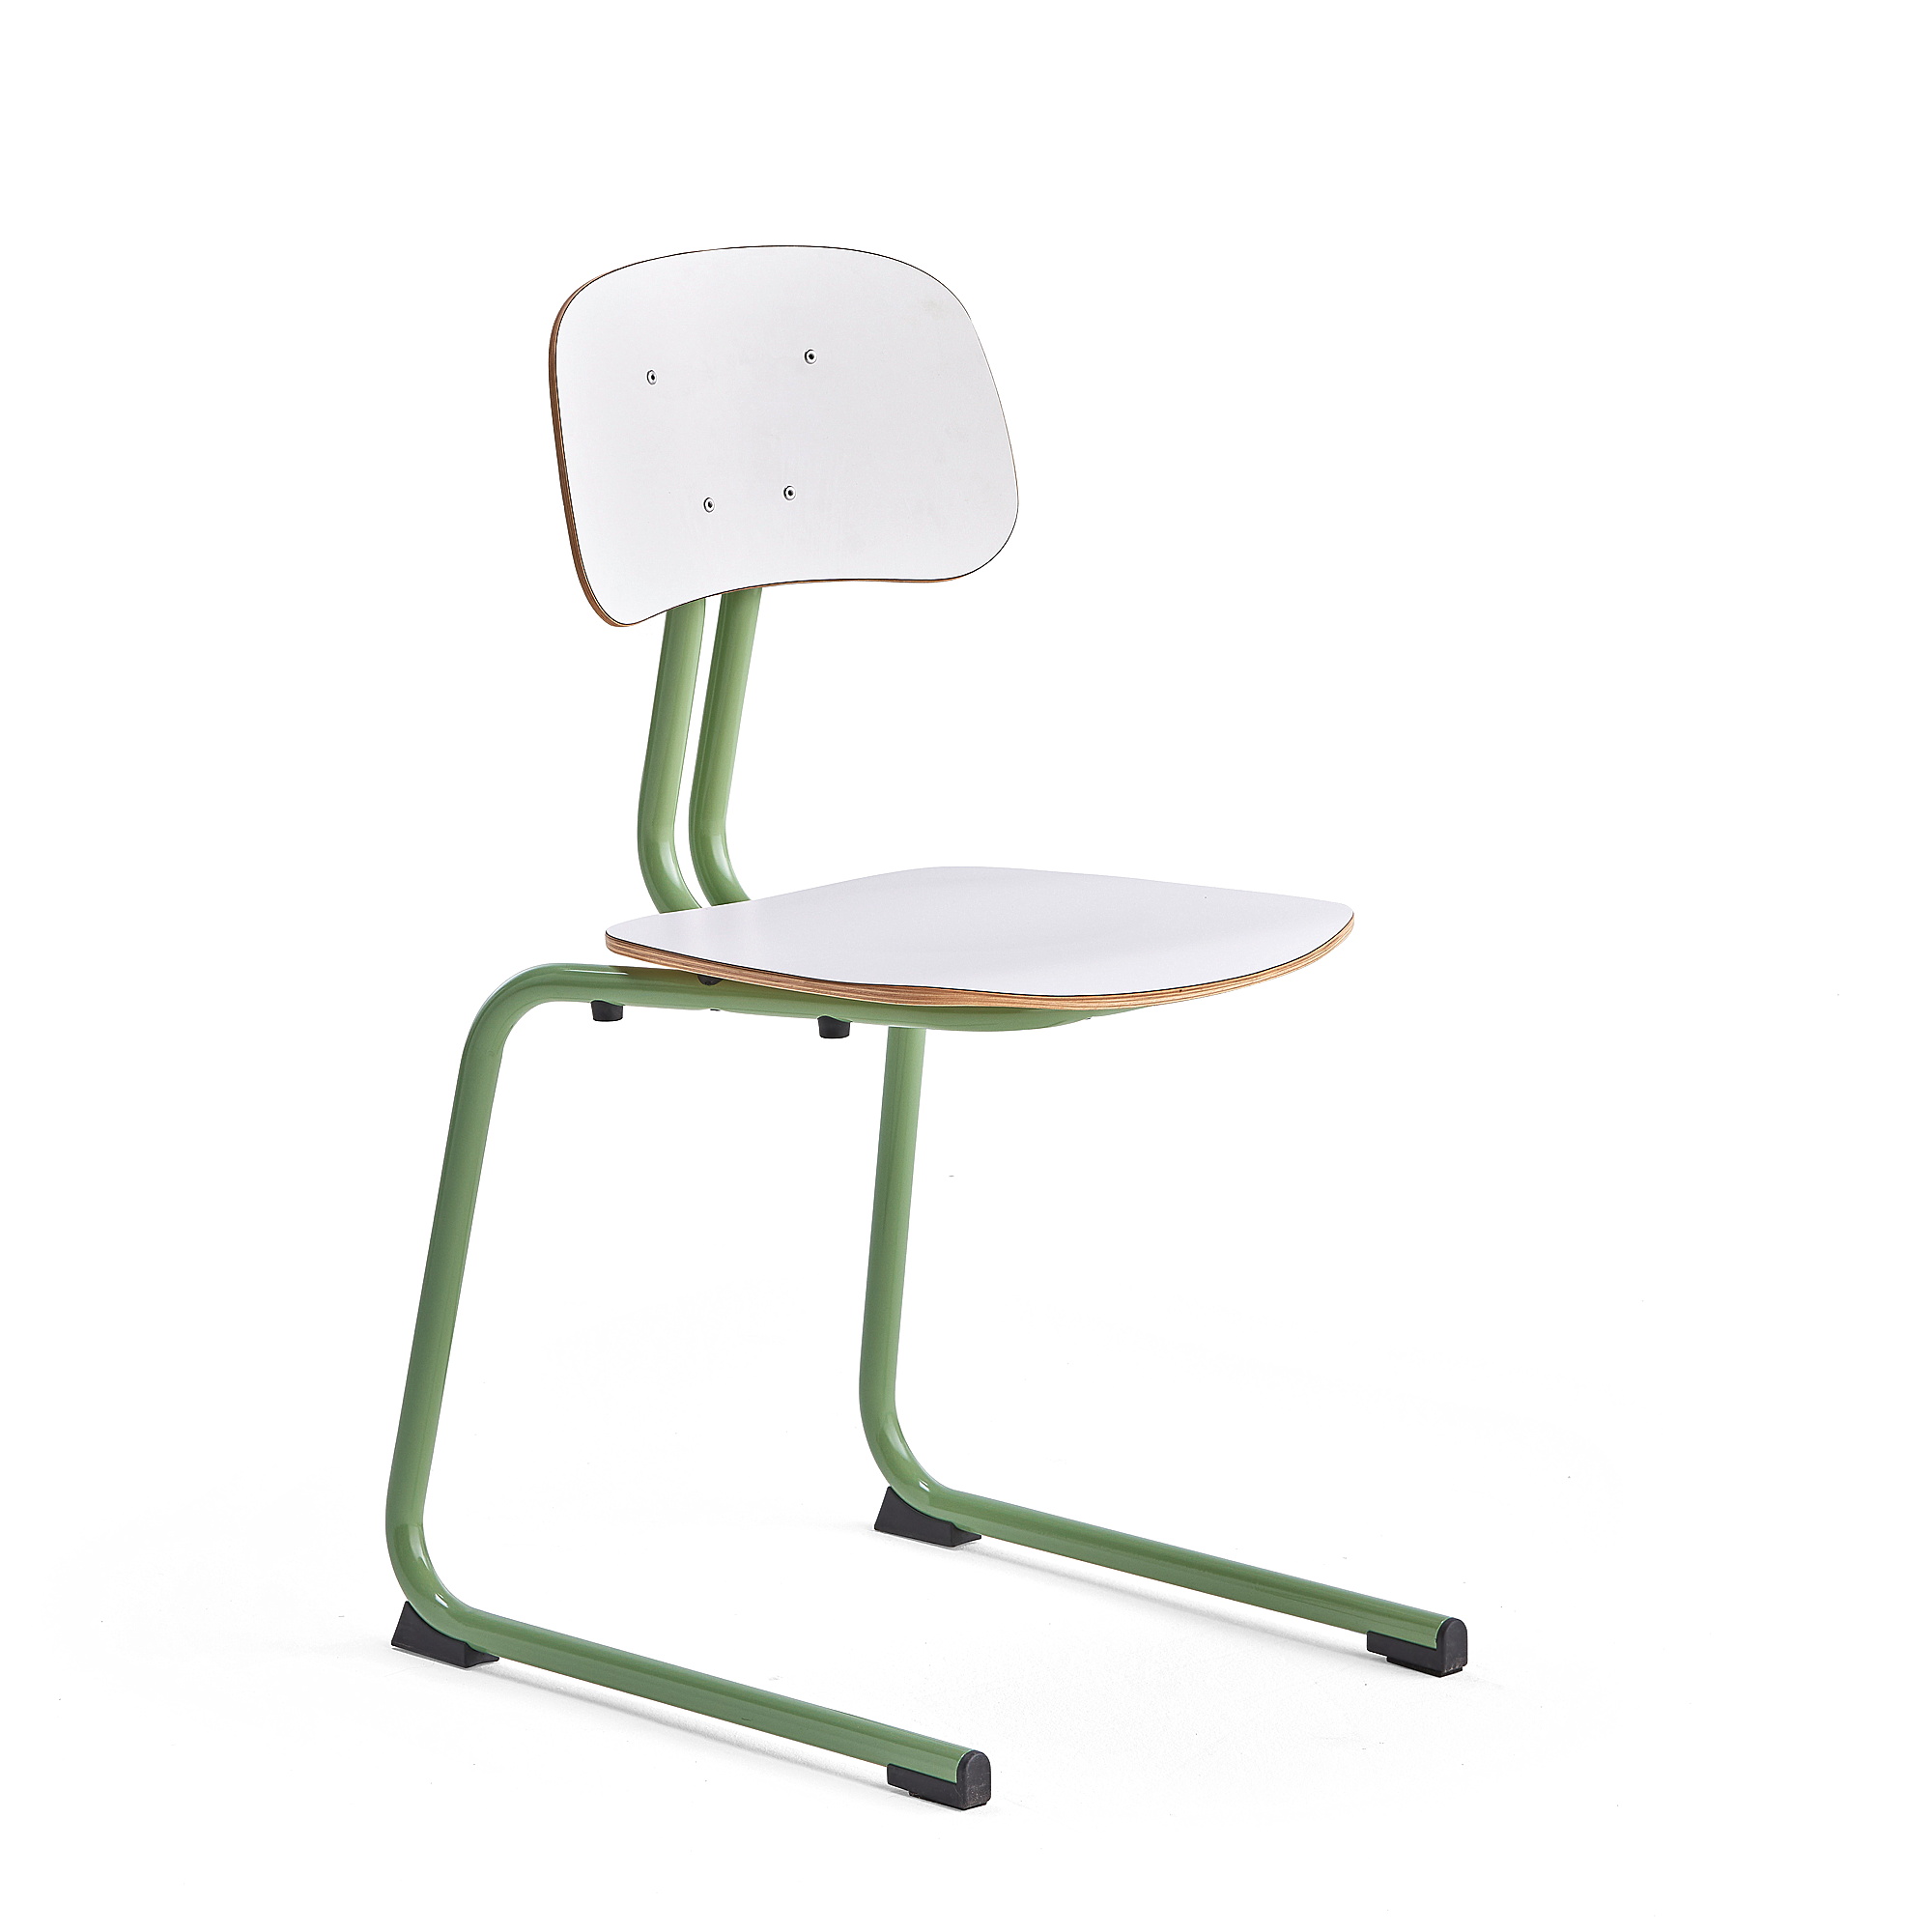 Školní židle YNGVE, ližinová podnož, výška 460 mm, zelená/bílá